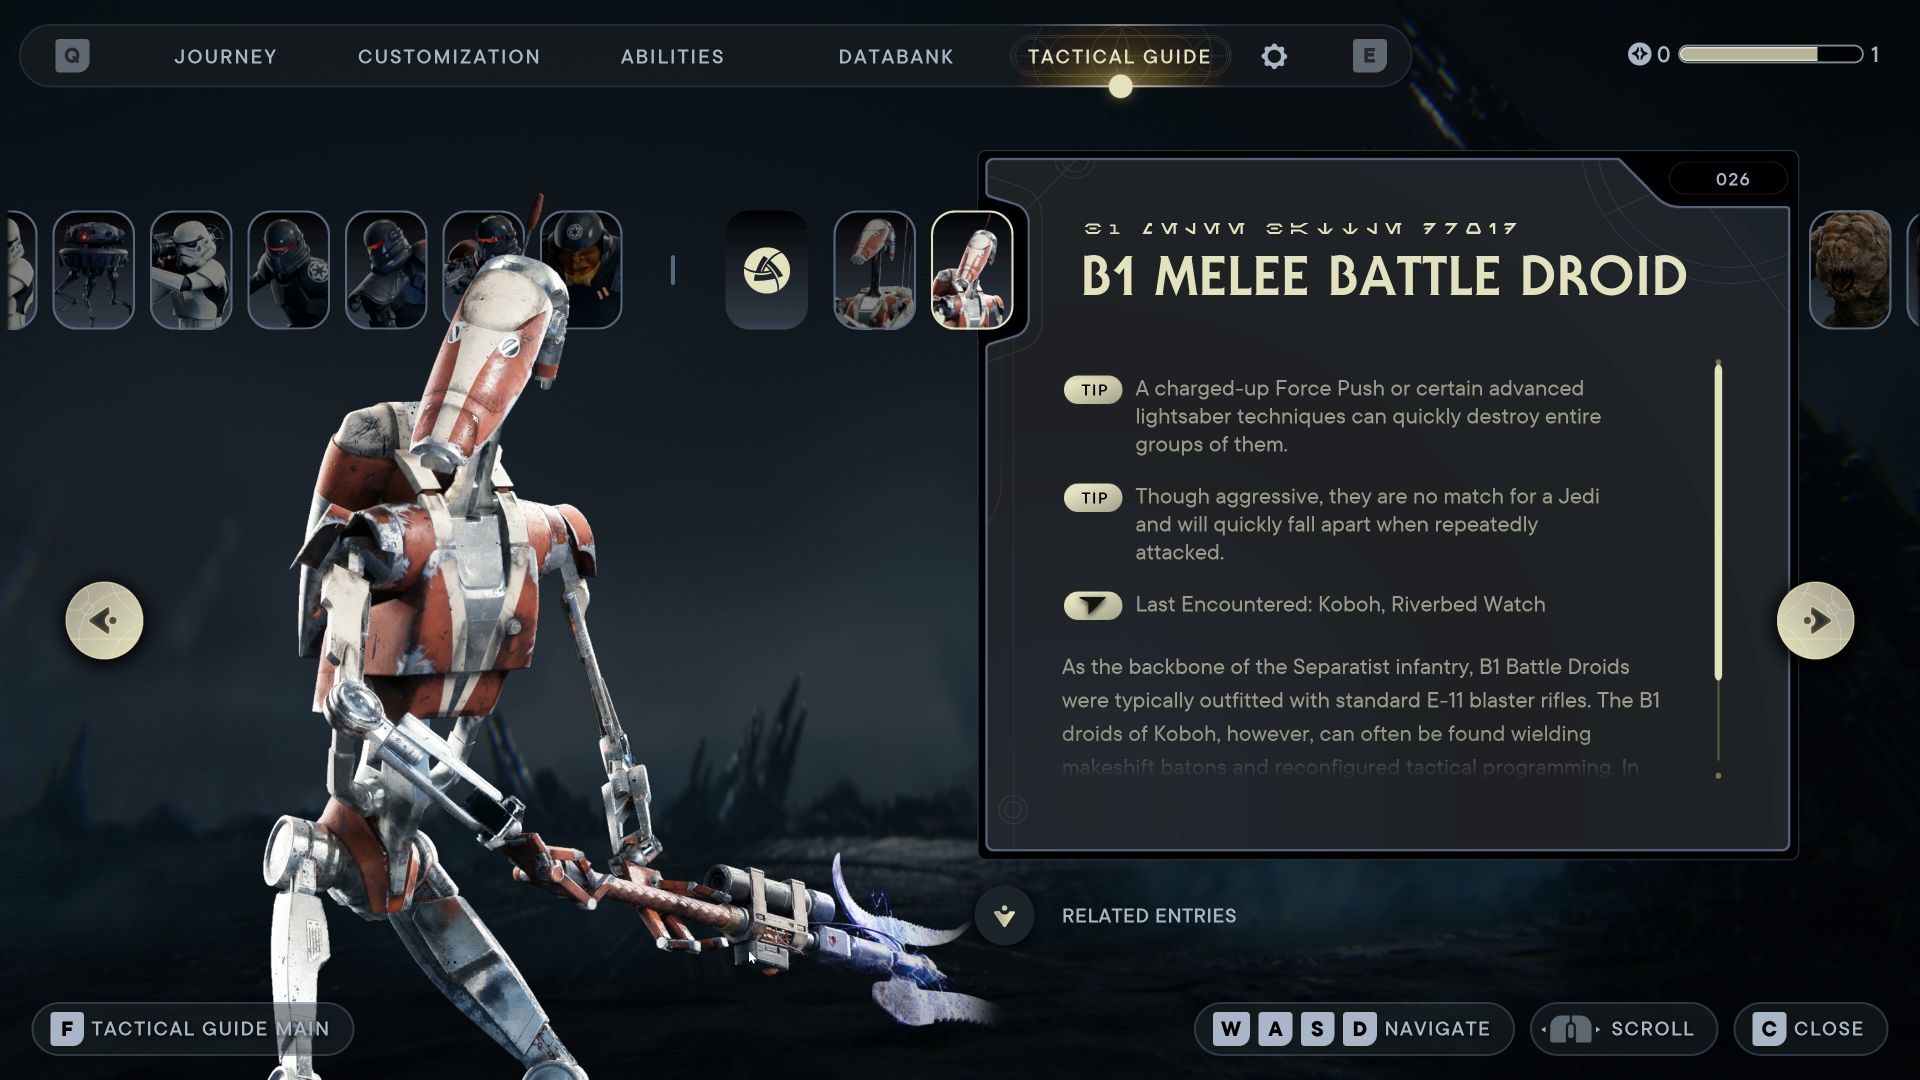 B1 Melee Battle Droid (026) Star Wars Jedi Survivor Tactical Guide Update - Star Wars Jedi Survivor